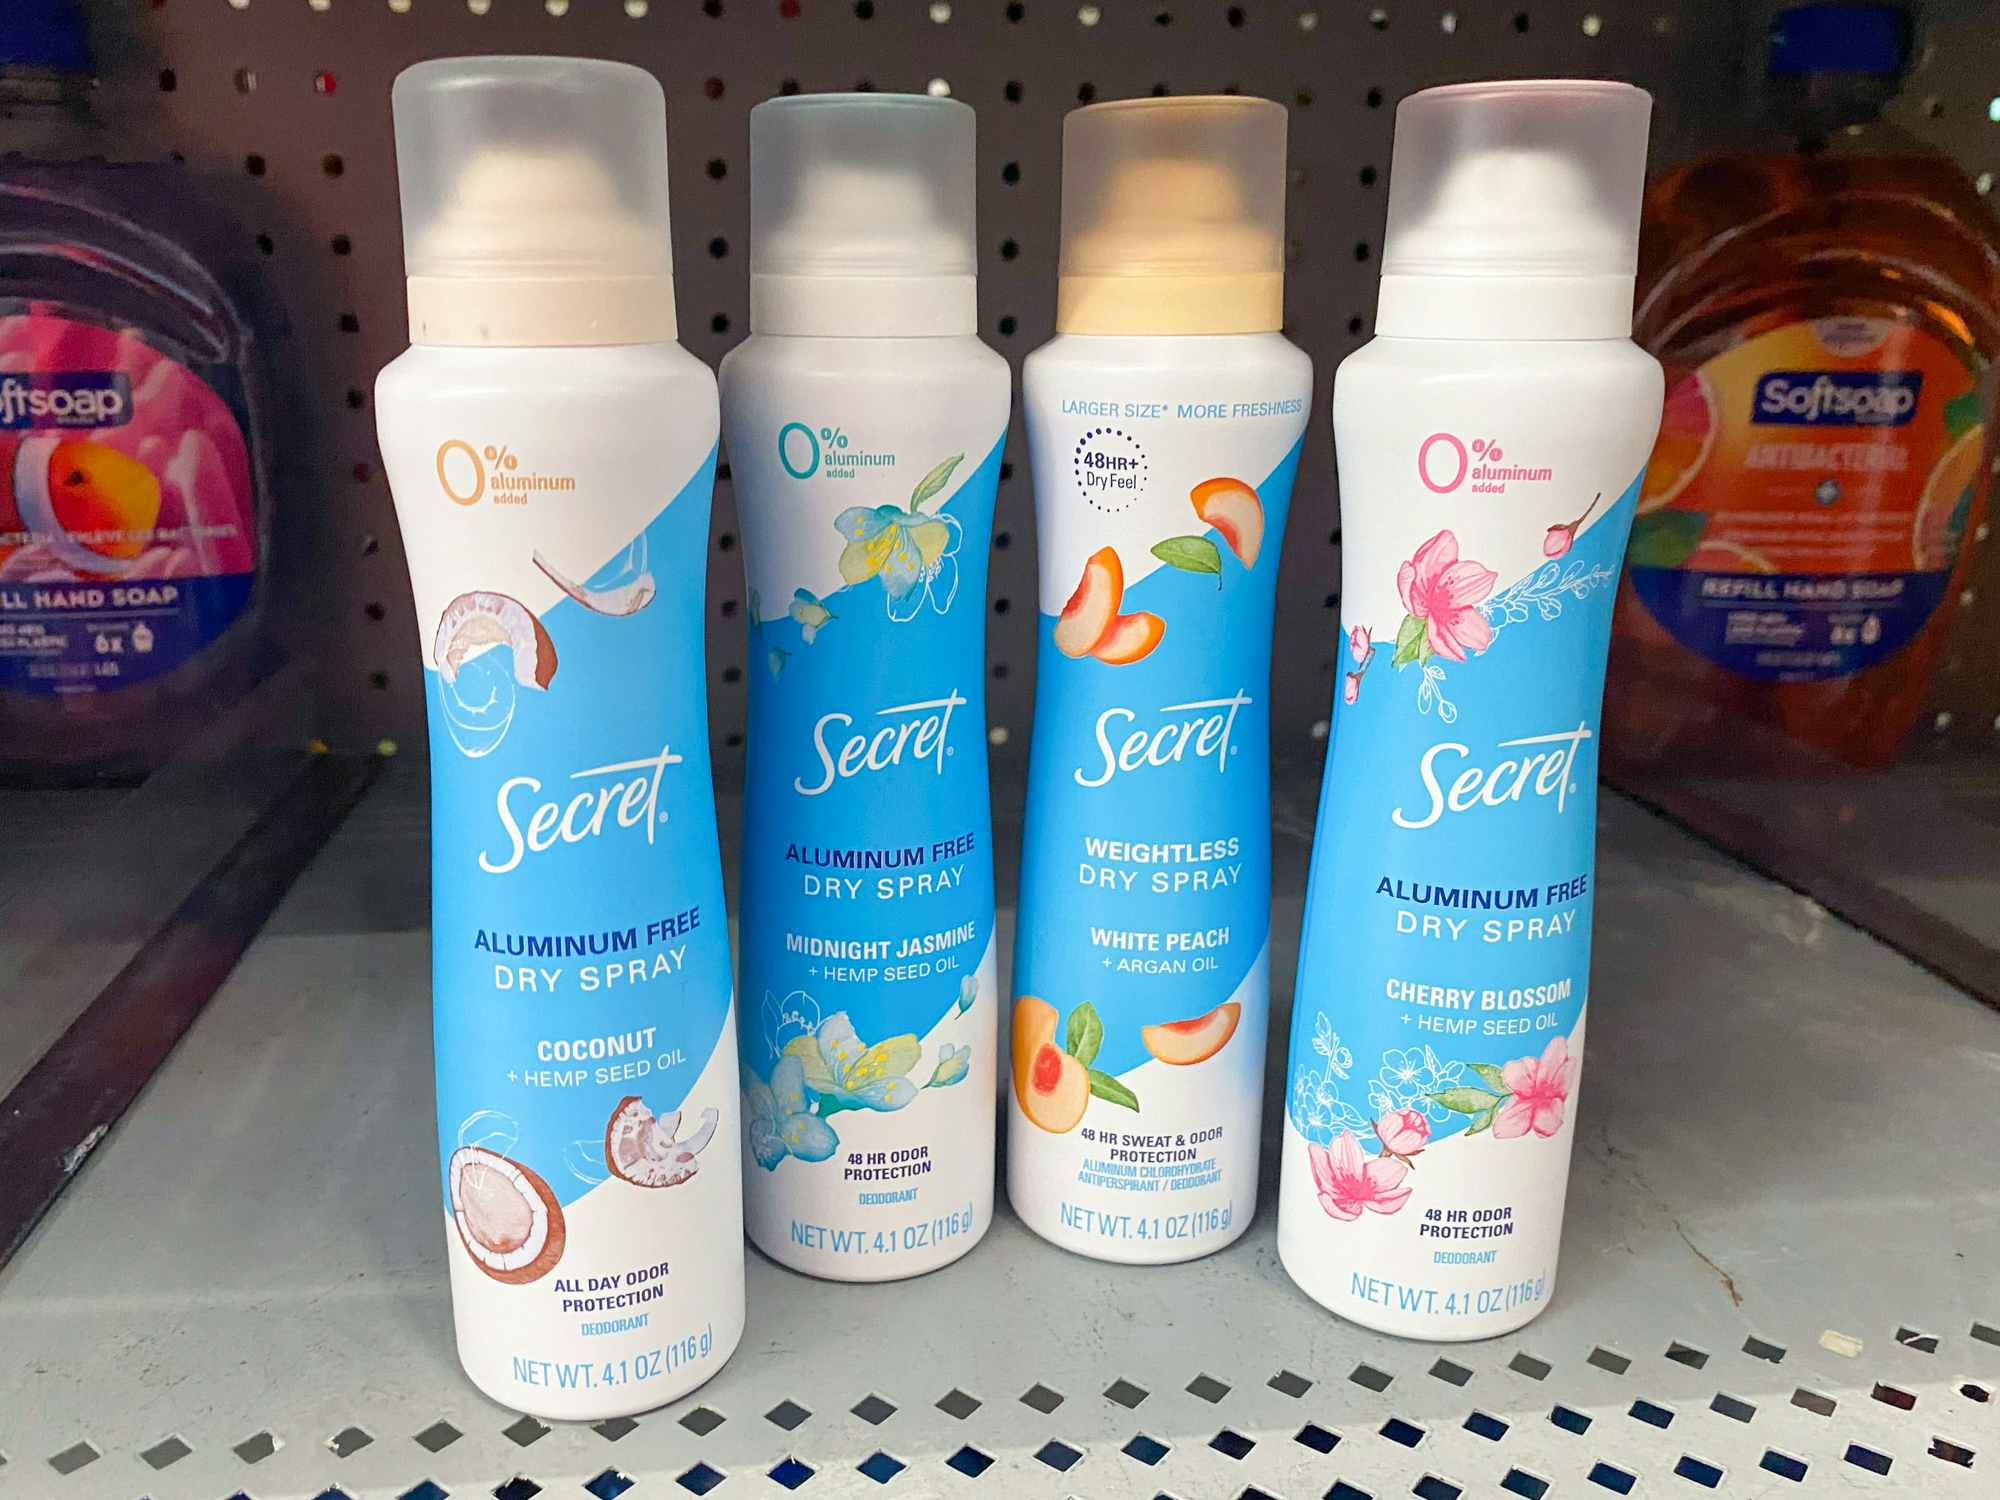 Some Secret Dry Spray deodorants on a Walmart shelf